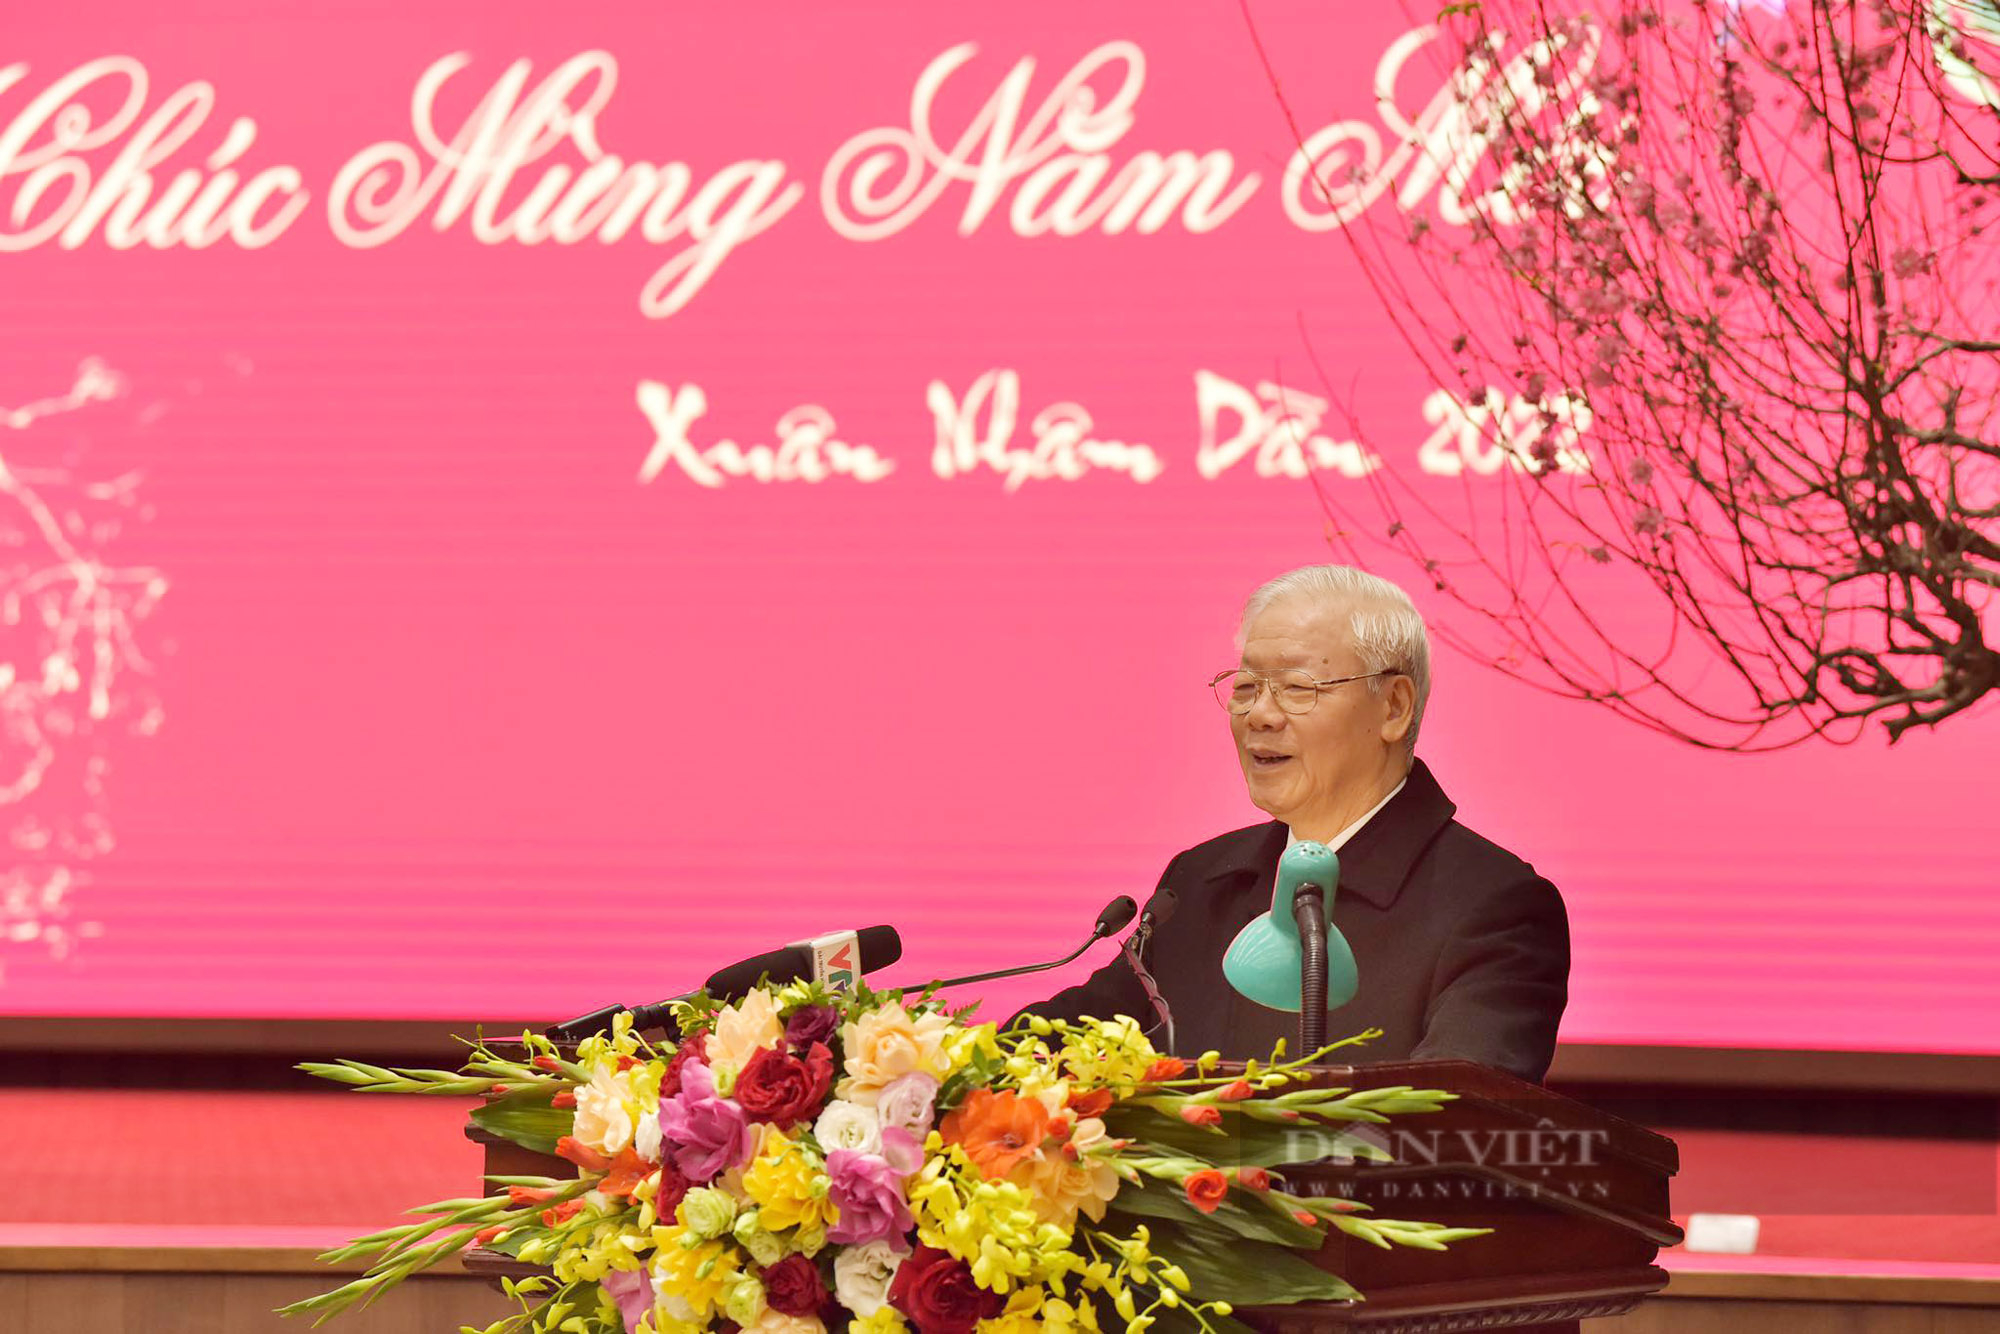 TRỰC TIẾP: Tổng Bí thư Nguyễn Phú Trọng tới chúc Tết Thành ủy Hà Nội trước thời khắc giao thừa - Ảnh 11.